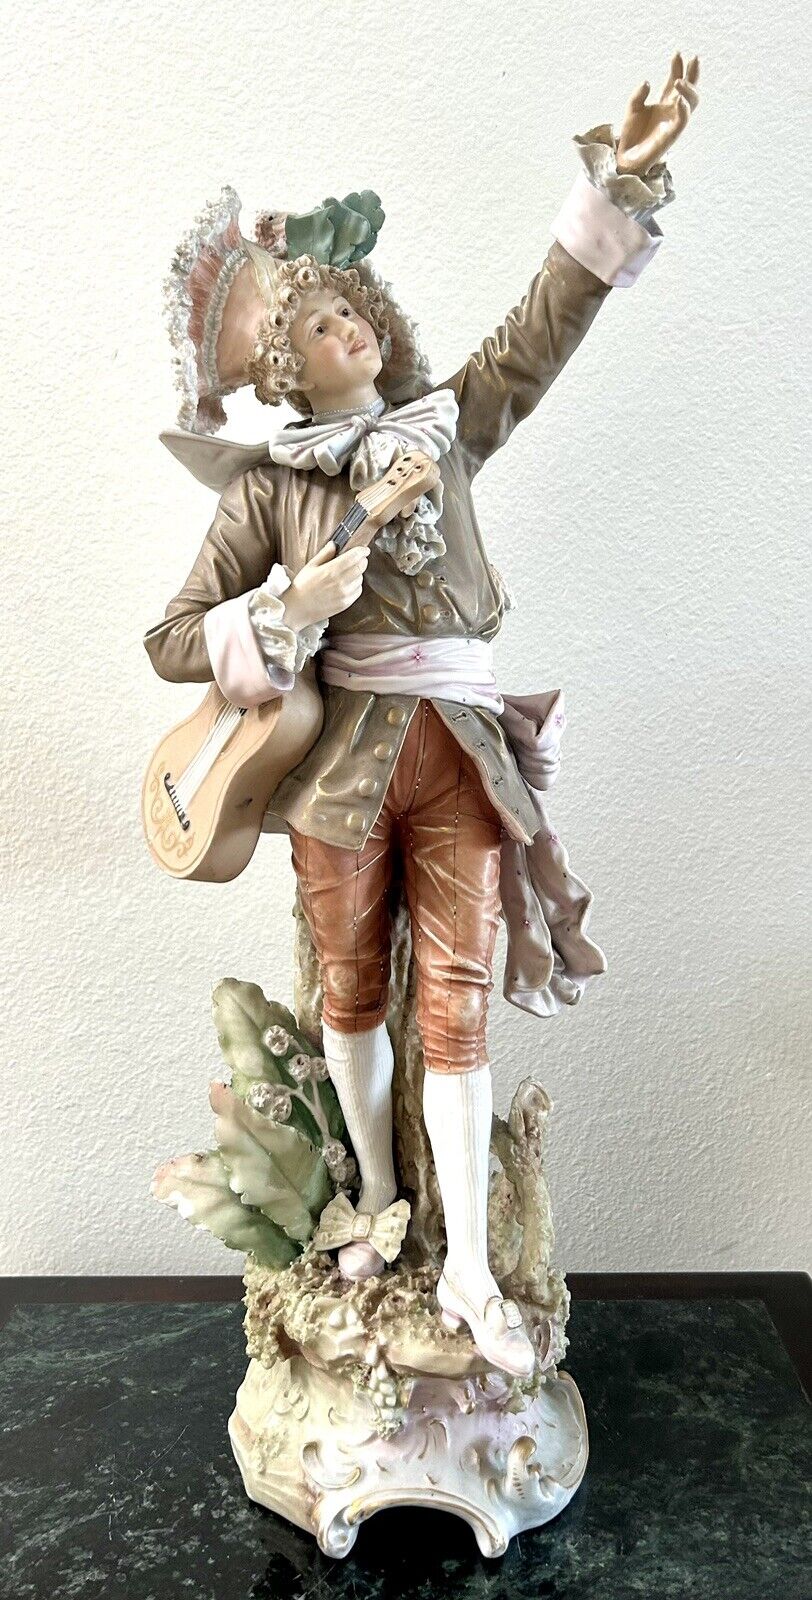 RARE Antique Royal Dux Victorian Man with Guitar Sculpture Figure 21”H